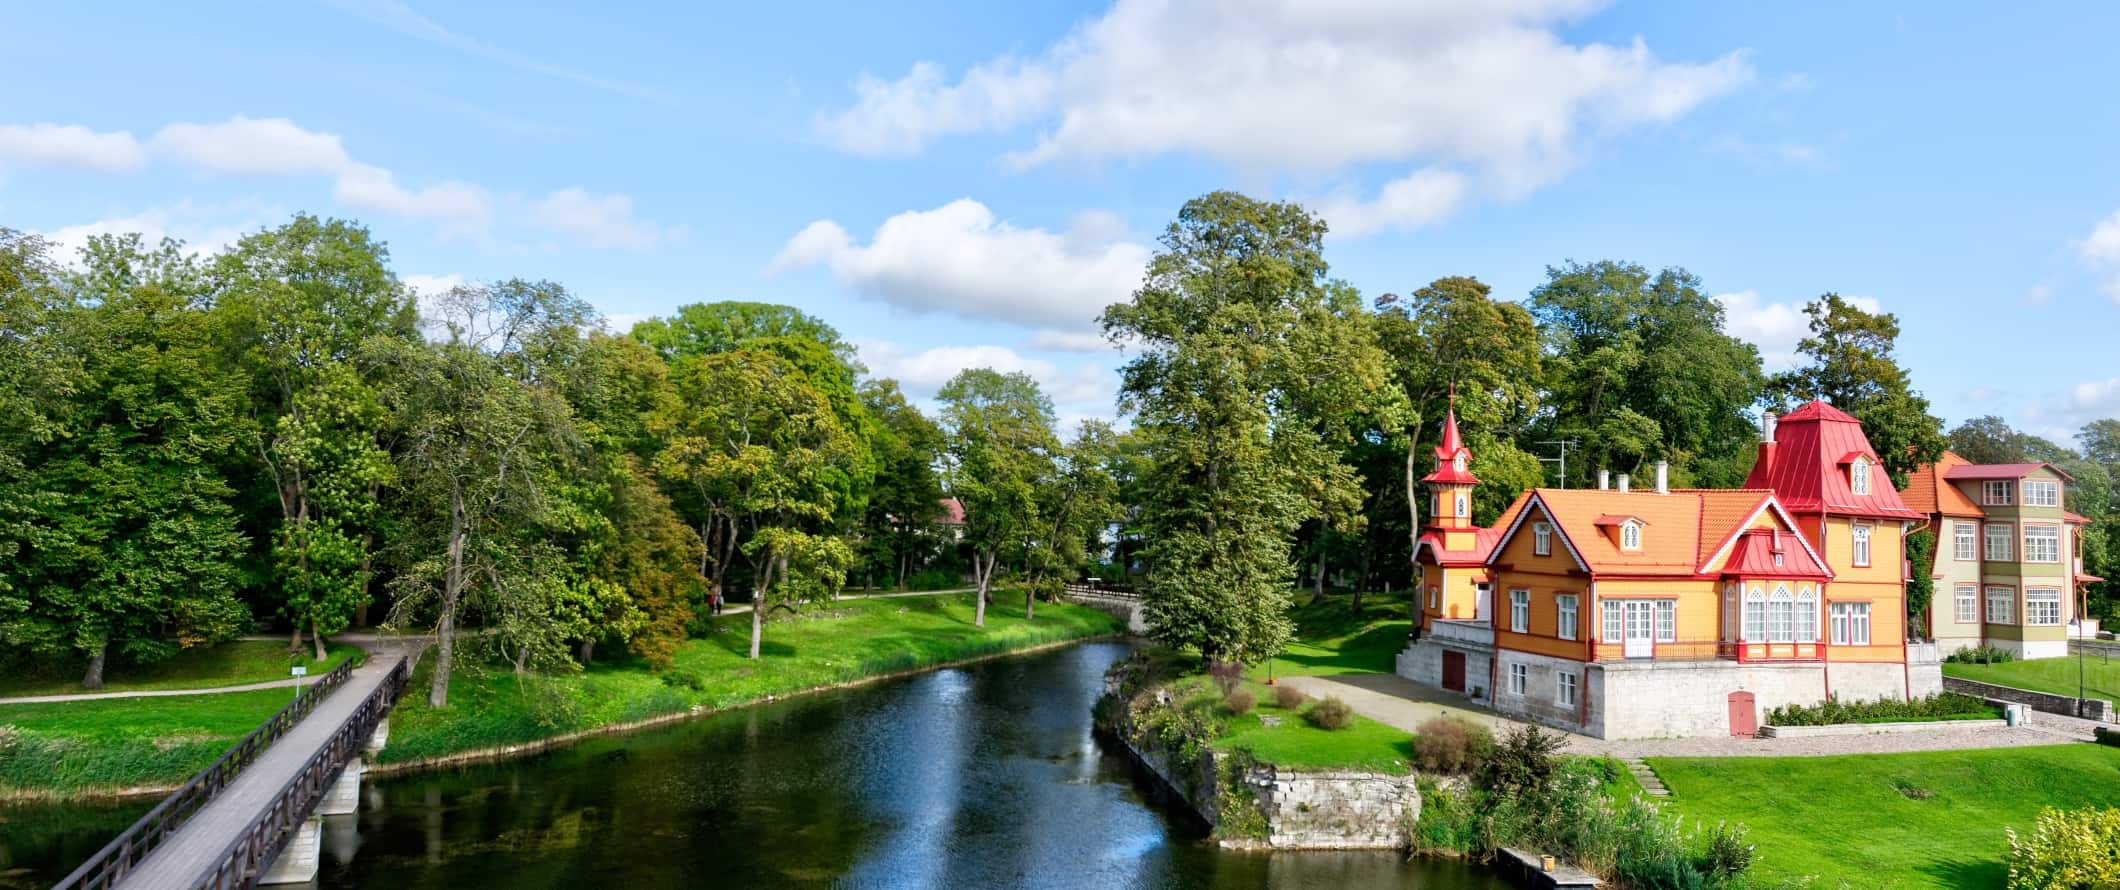 Edifícios pintados ao longo do canal, queridos por árvores, na área rural da Estônia